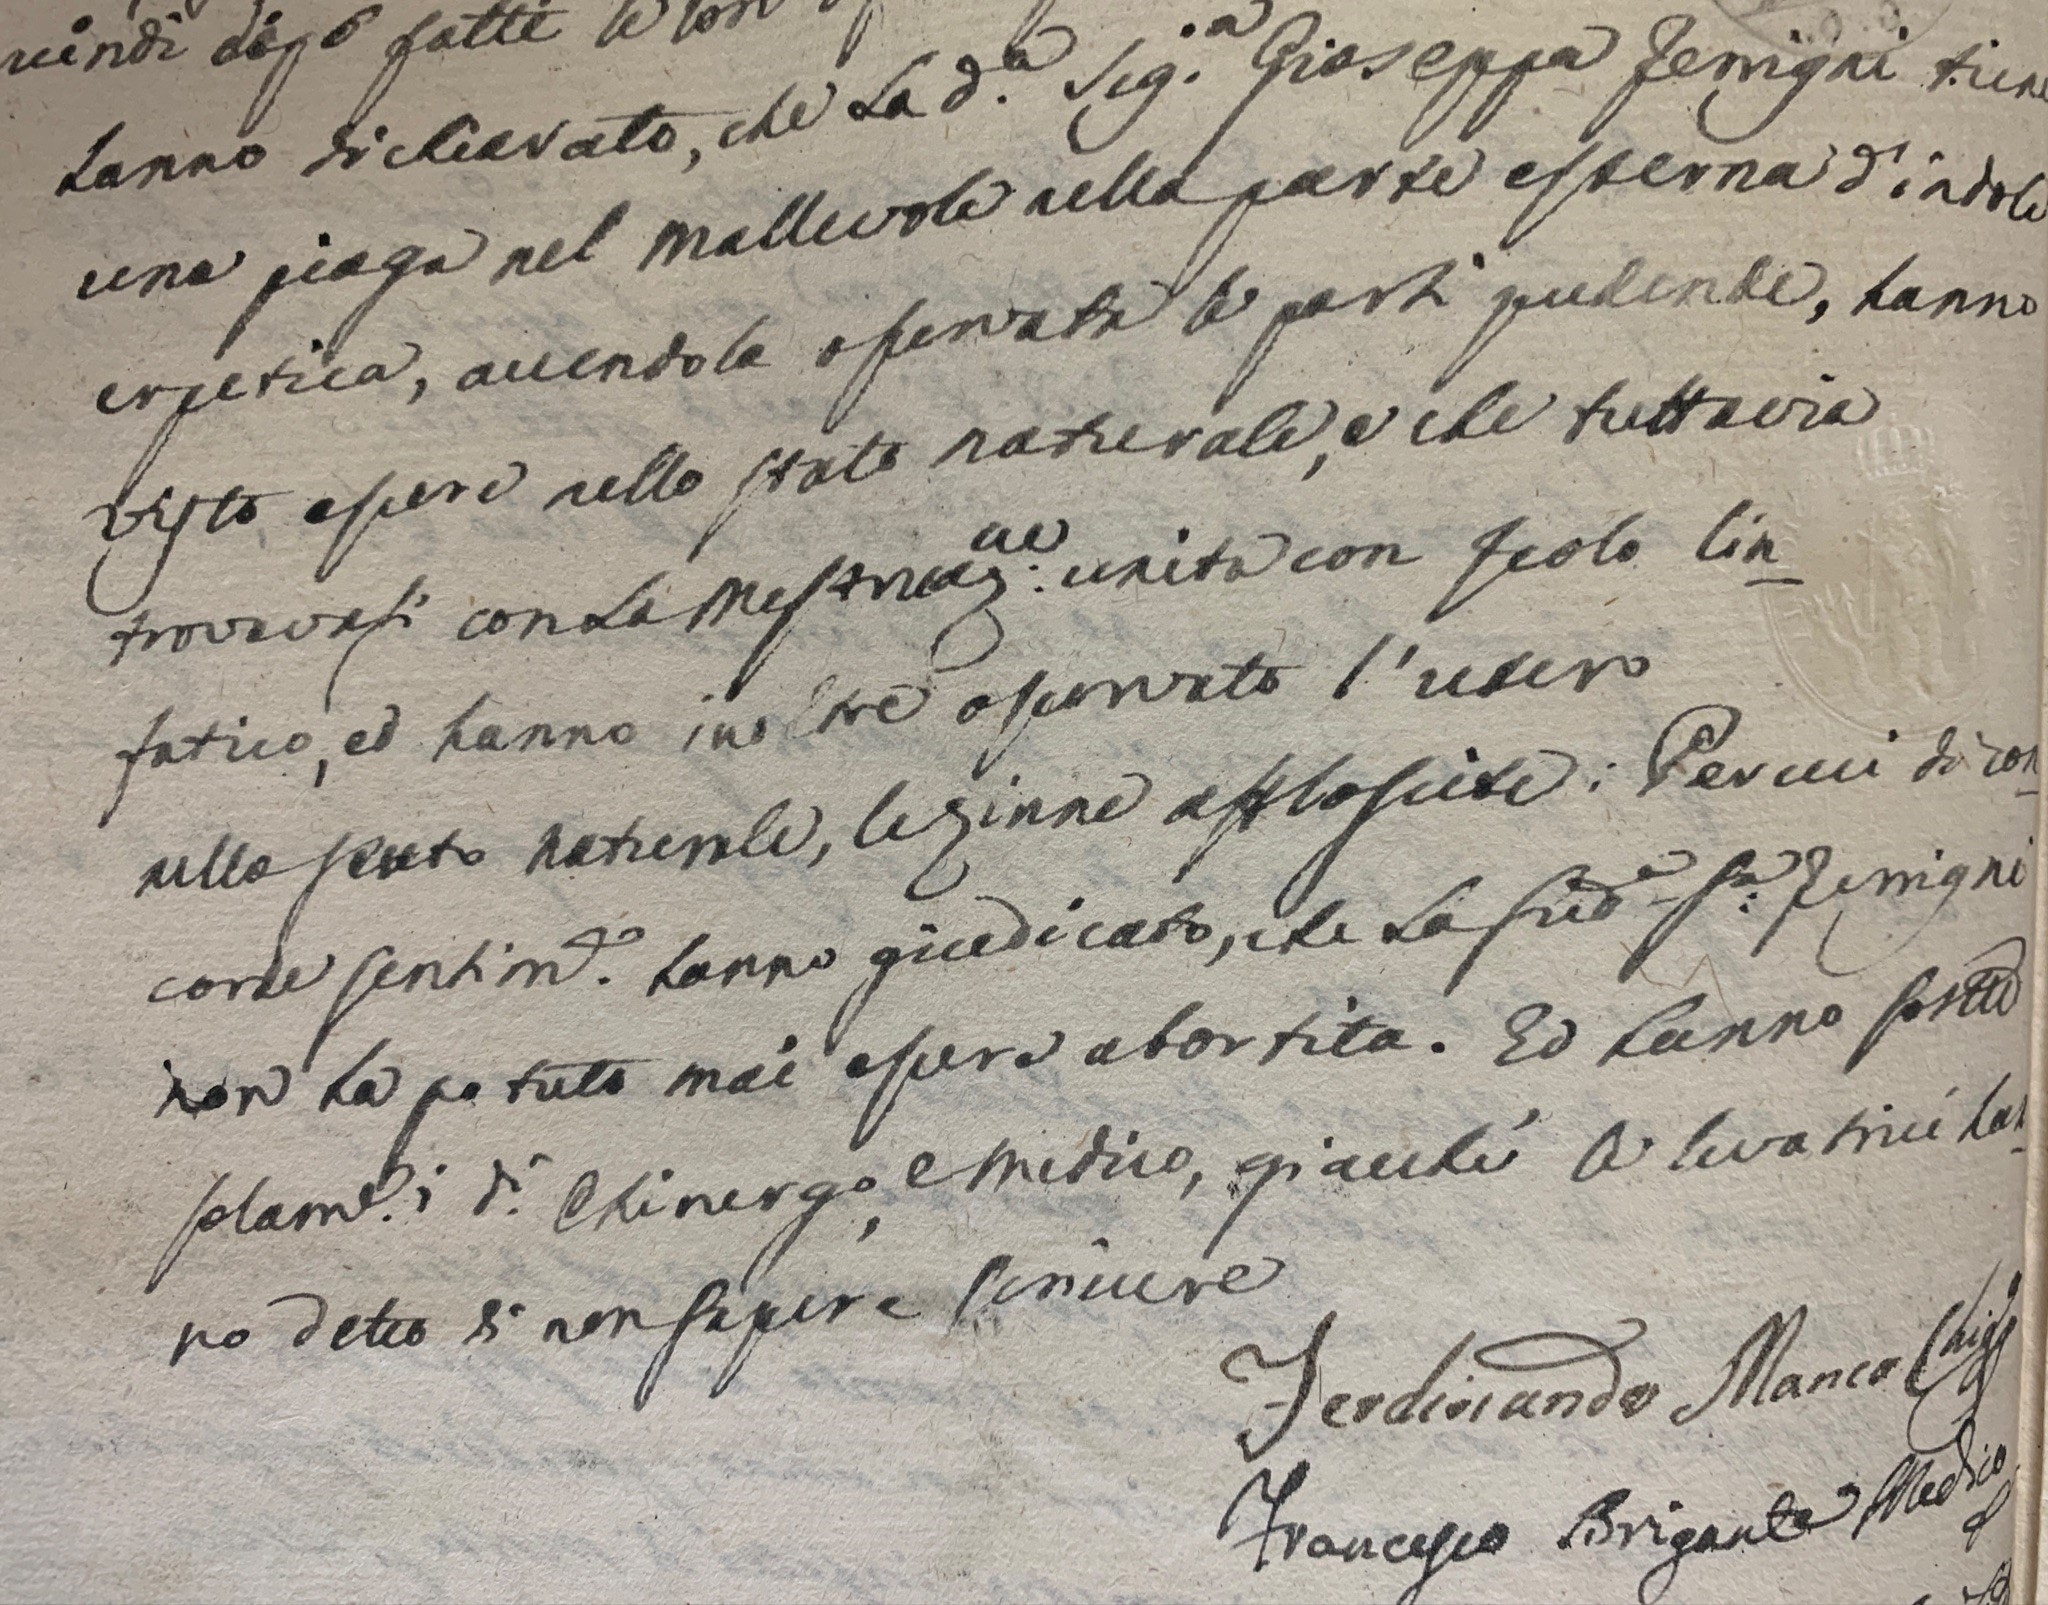 Perizia medica su Maria Giuseppe Ferrigni. Napoli, 1810